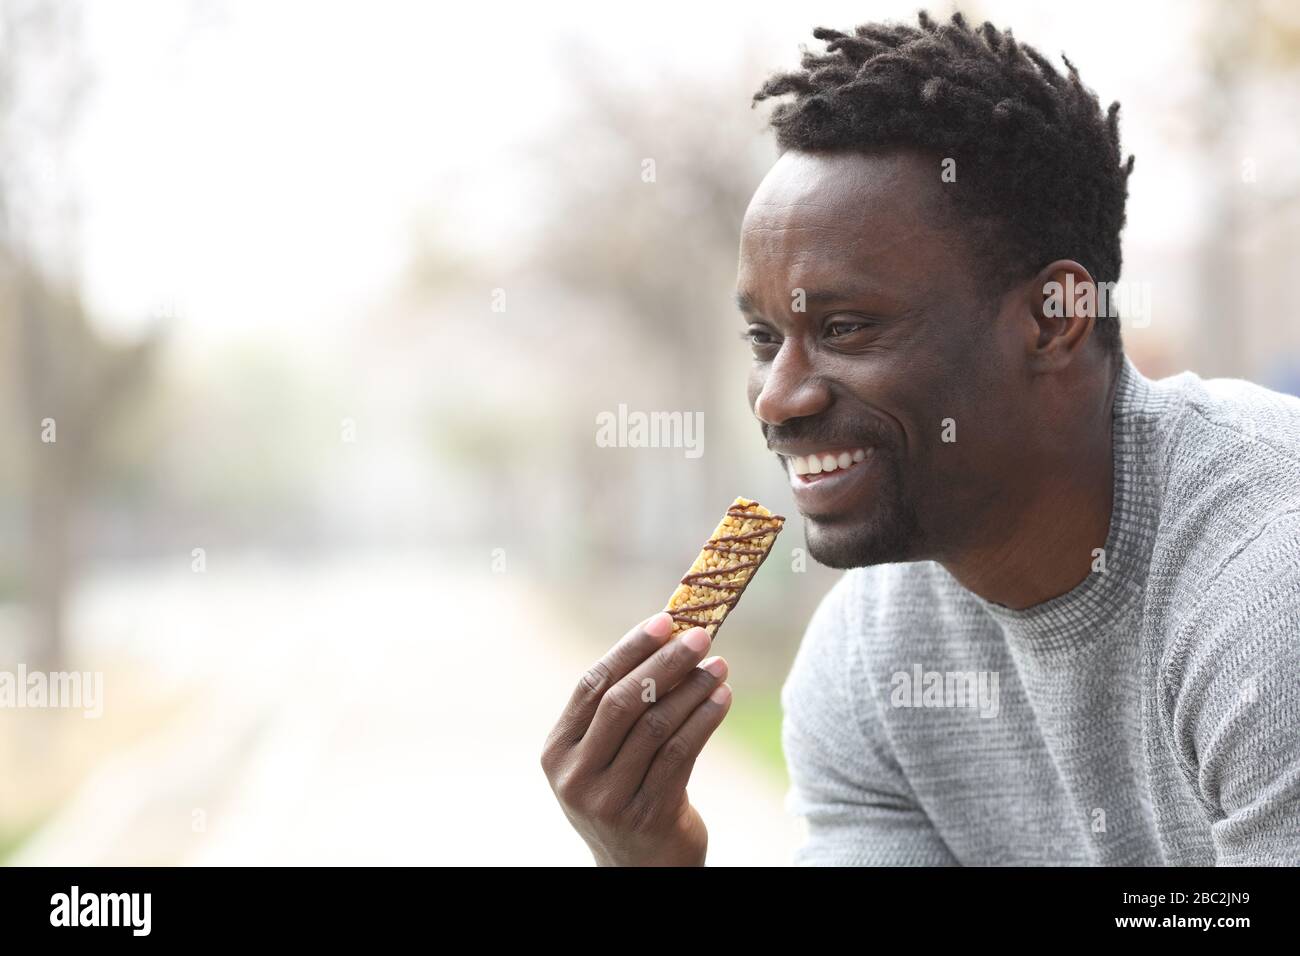 Un homme noir heureux mangeant un bar à céréales dans un parc donnant sur l'extérieur Banque D'Images